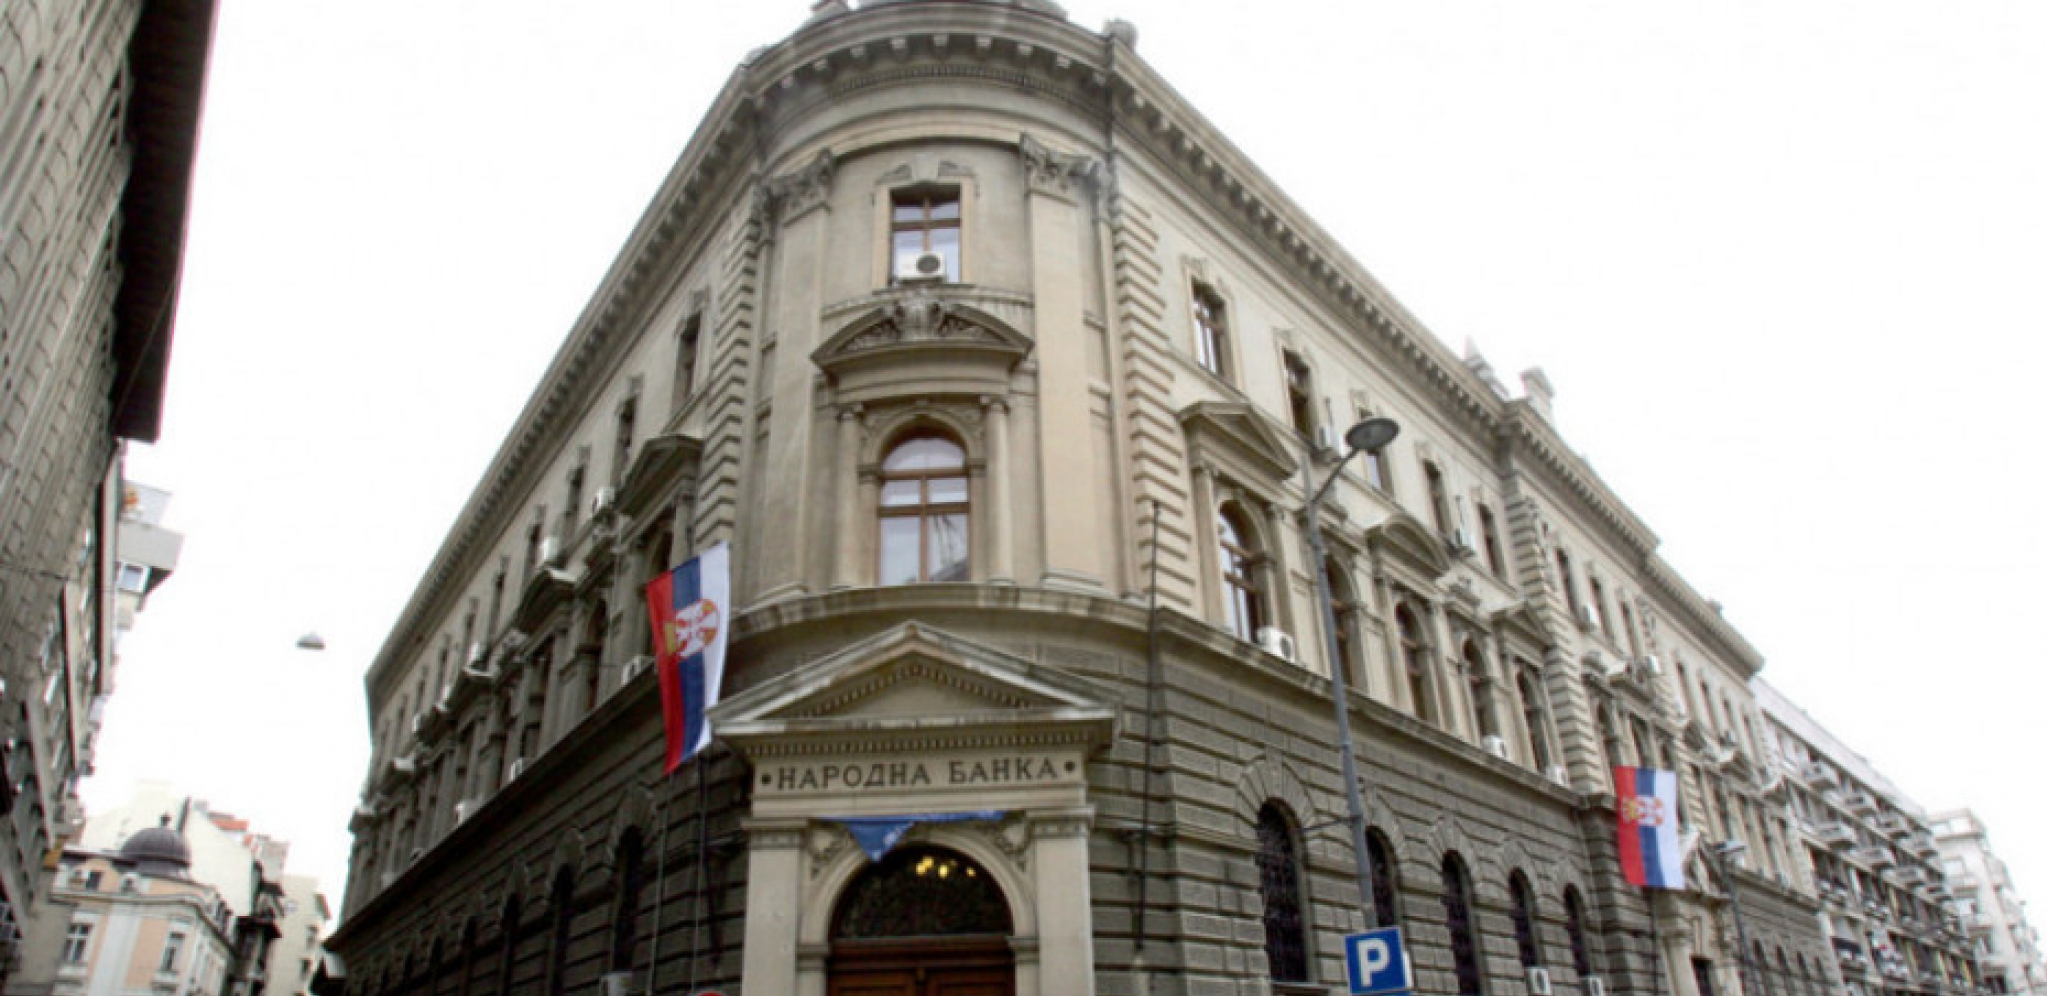 ZVANIČNI RAZGOVORI Delegacija Srbije sastala se sa misijom Međunarodnog monetarnog fonda